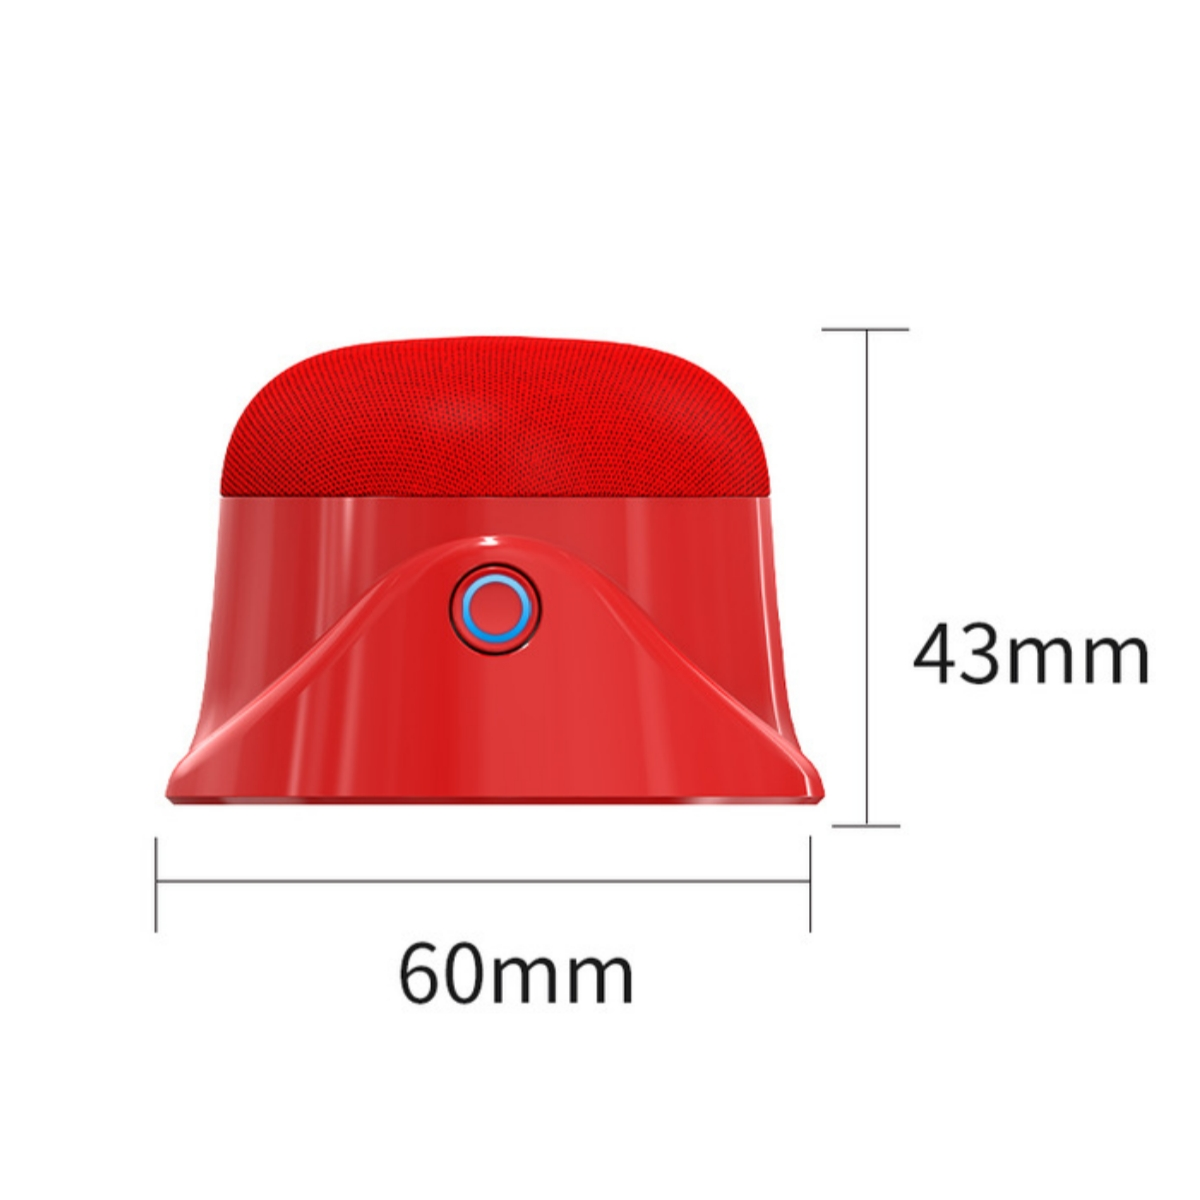 Lautsprecher, Rot elektrisch tragbarer Reise-Saftbecher wiederaufladbar SHAOKE Saftbecher Mini USB Bluetooth